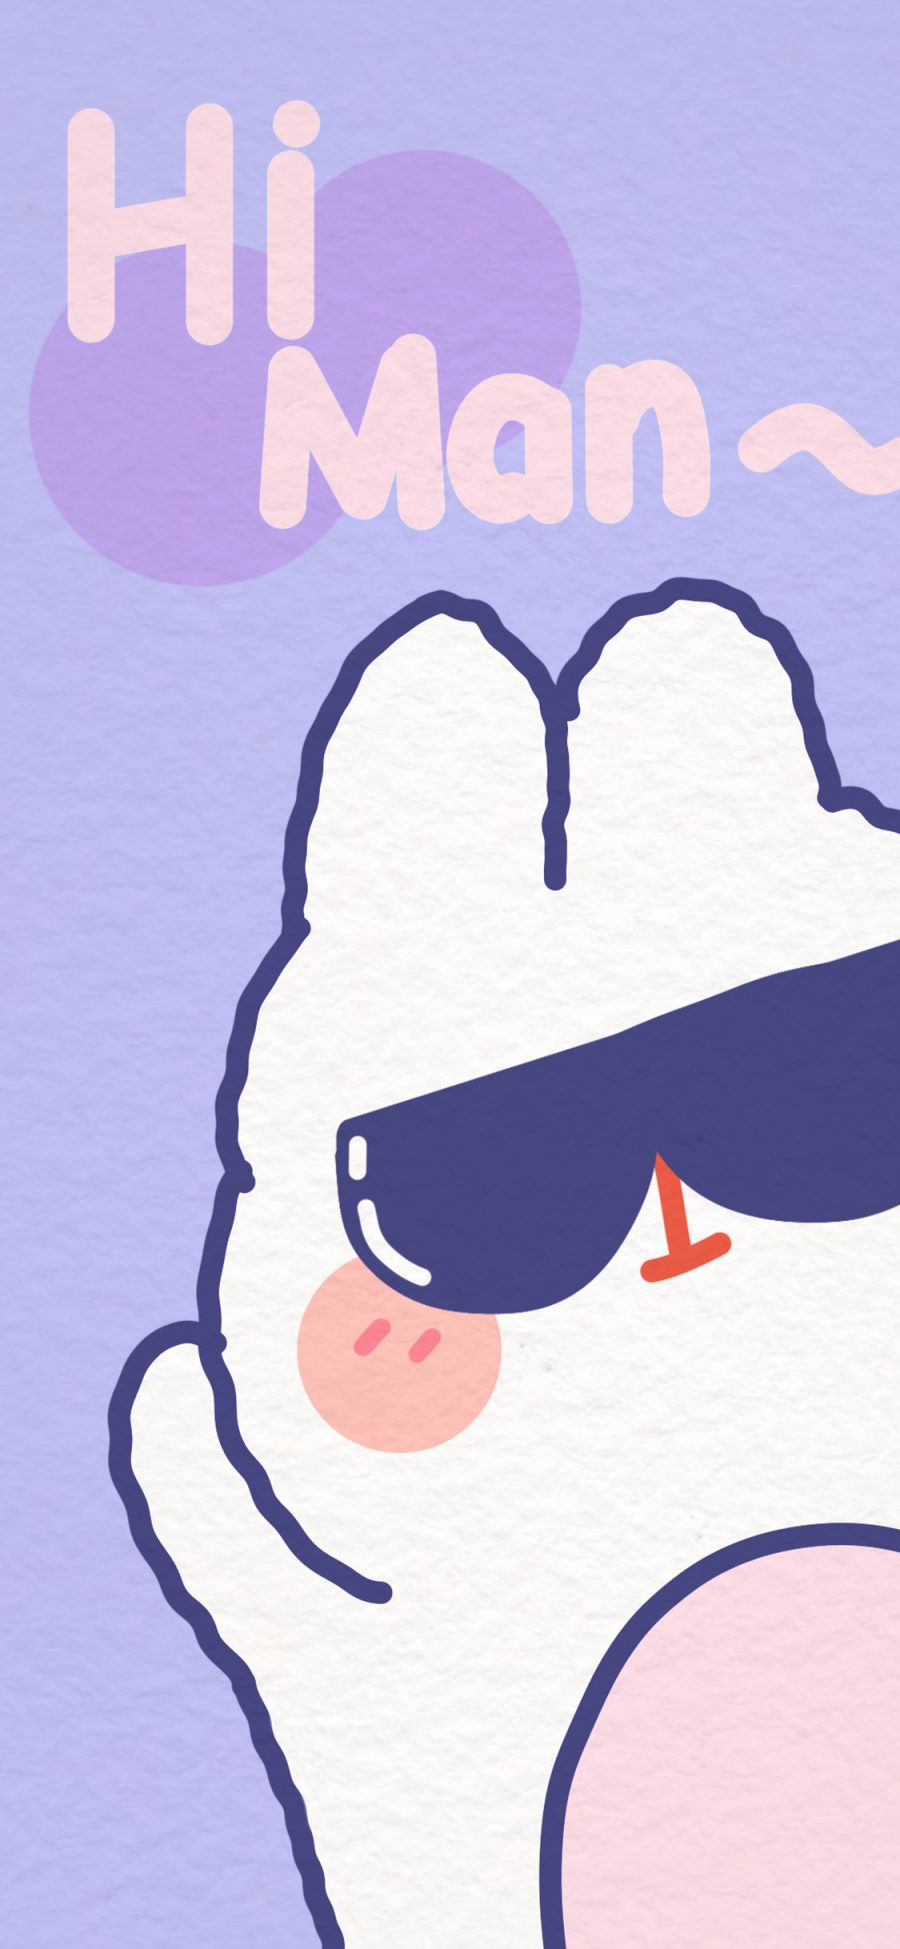 [2436×1125]紫色背景 卡通 兔子 hi 苹果手机动漫壁纸图片